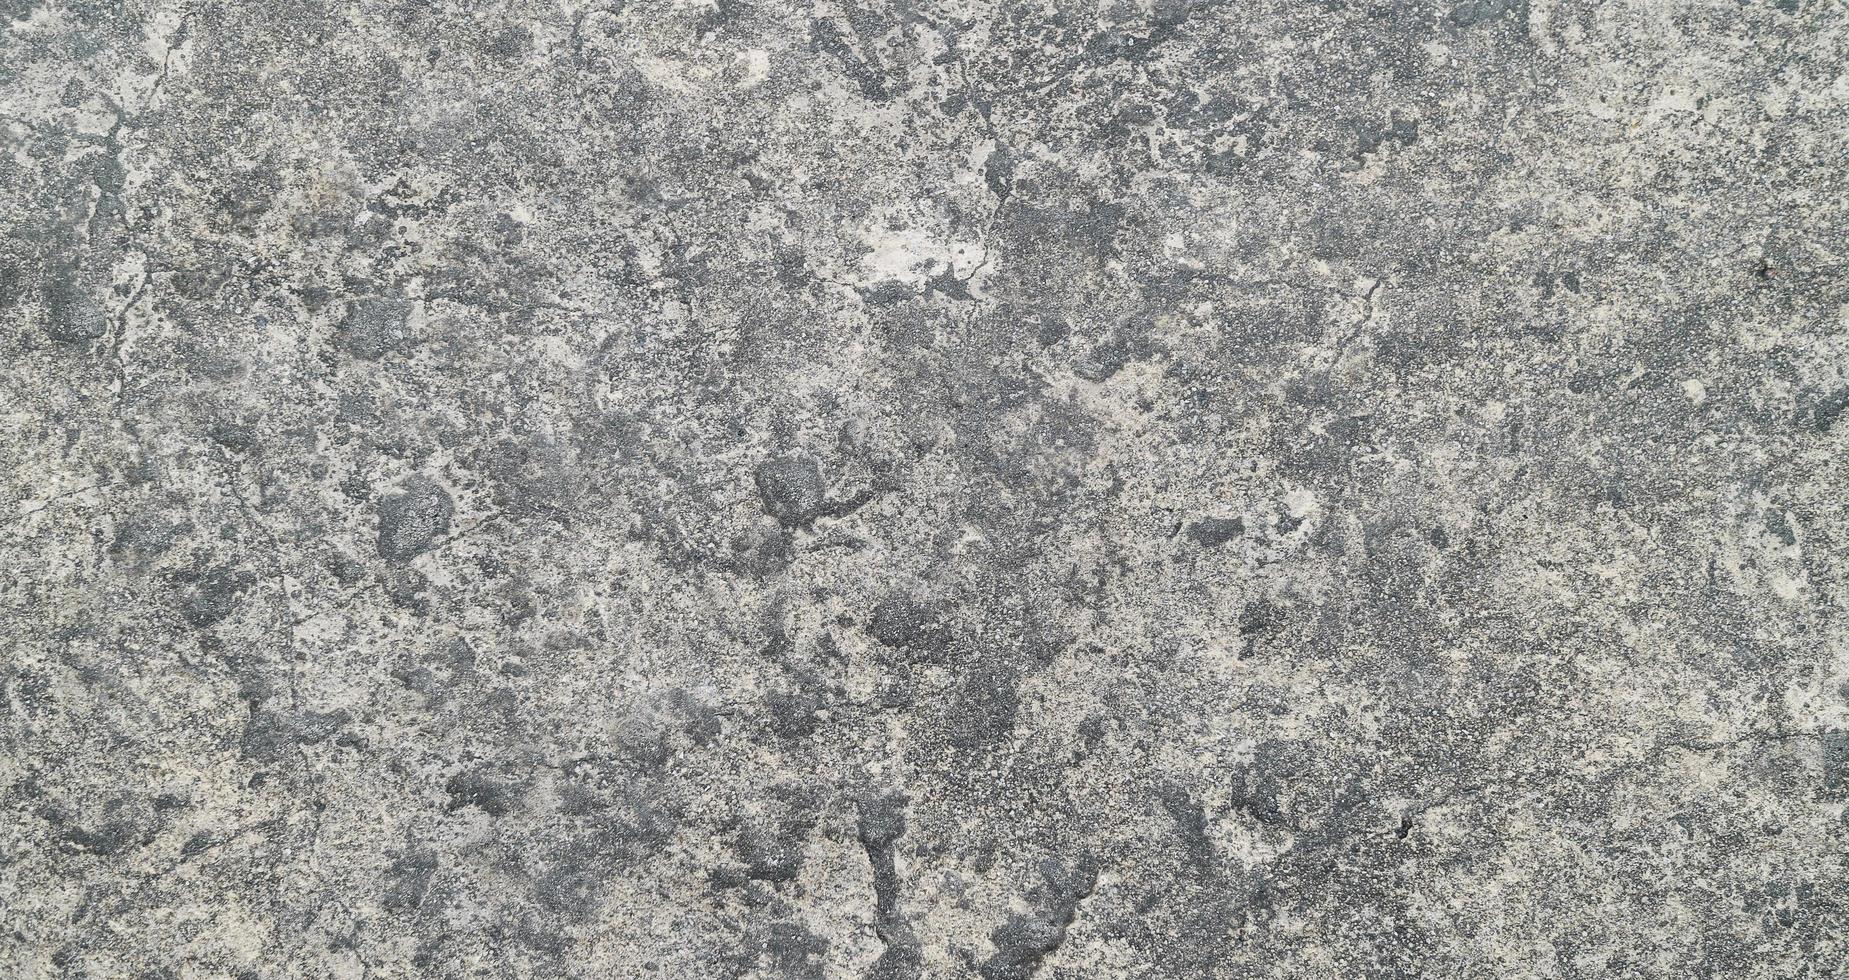 grauer alter Zementbeschaffenheitshintergrund. horizontale Zement- und Betonstruktur. foto